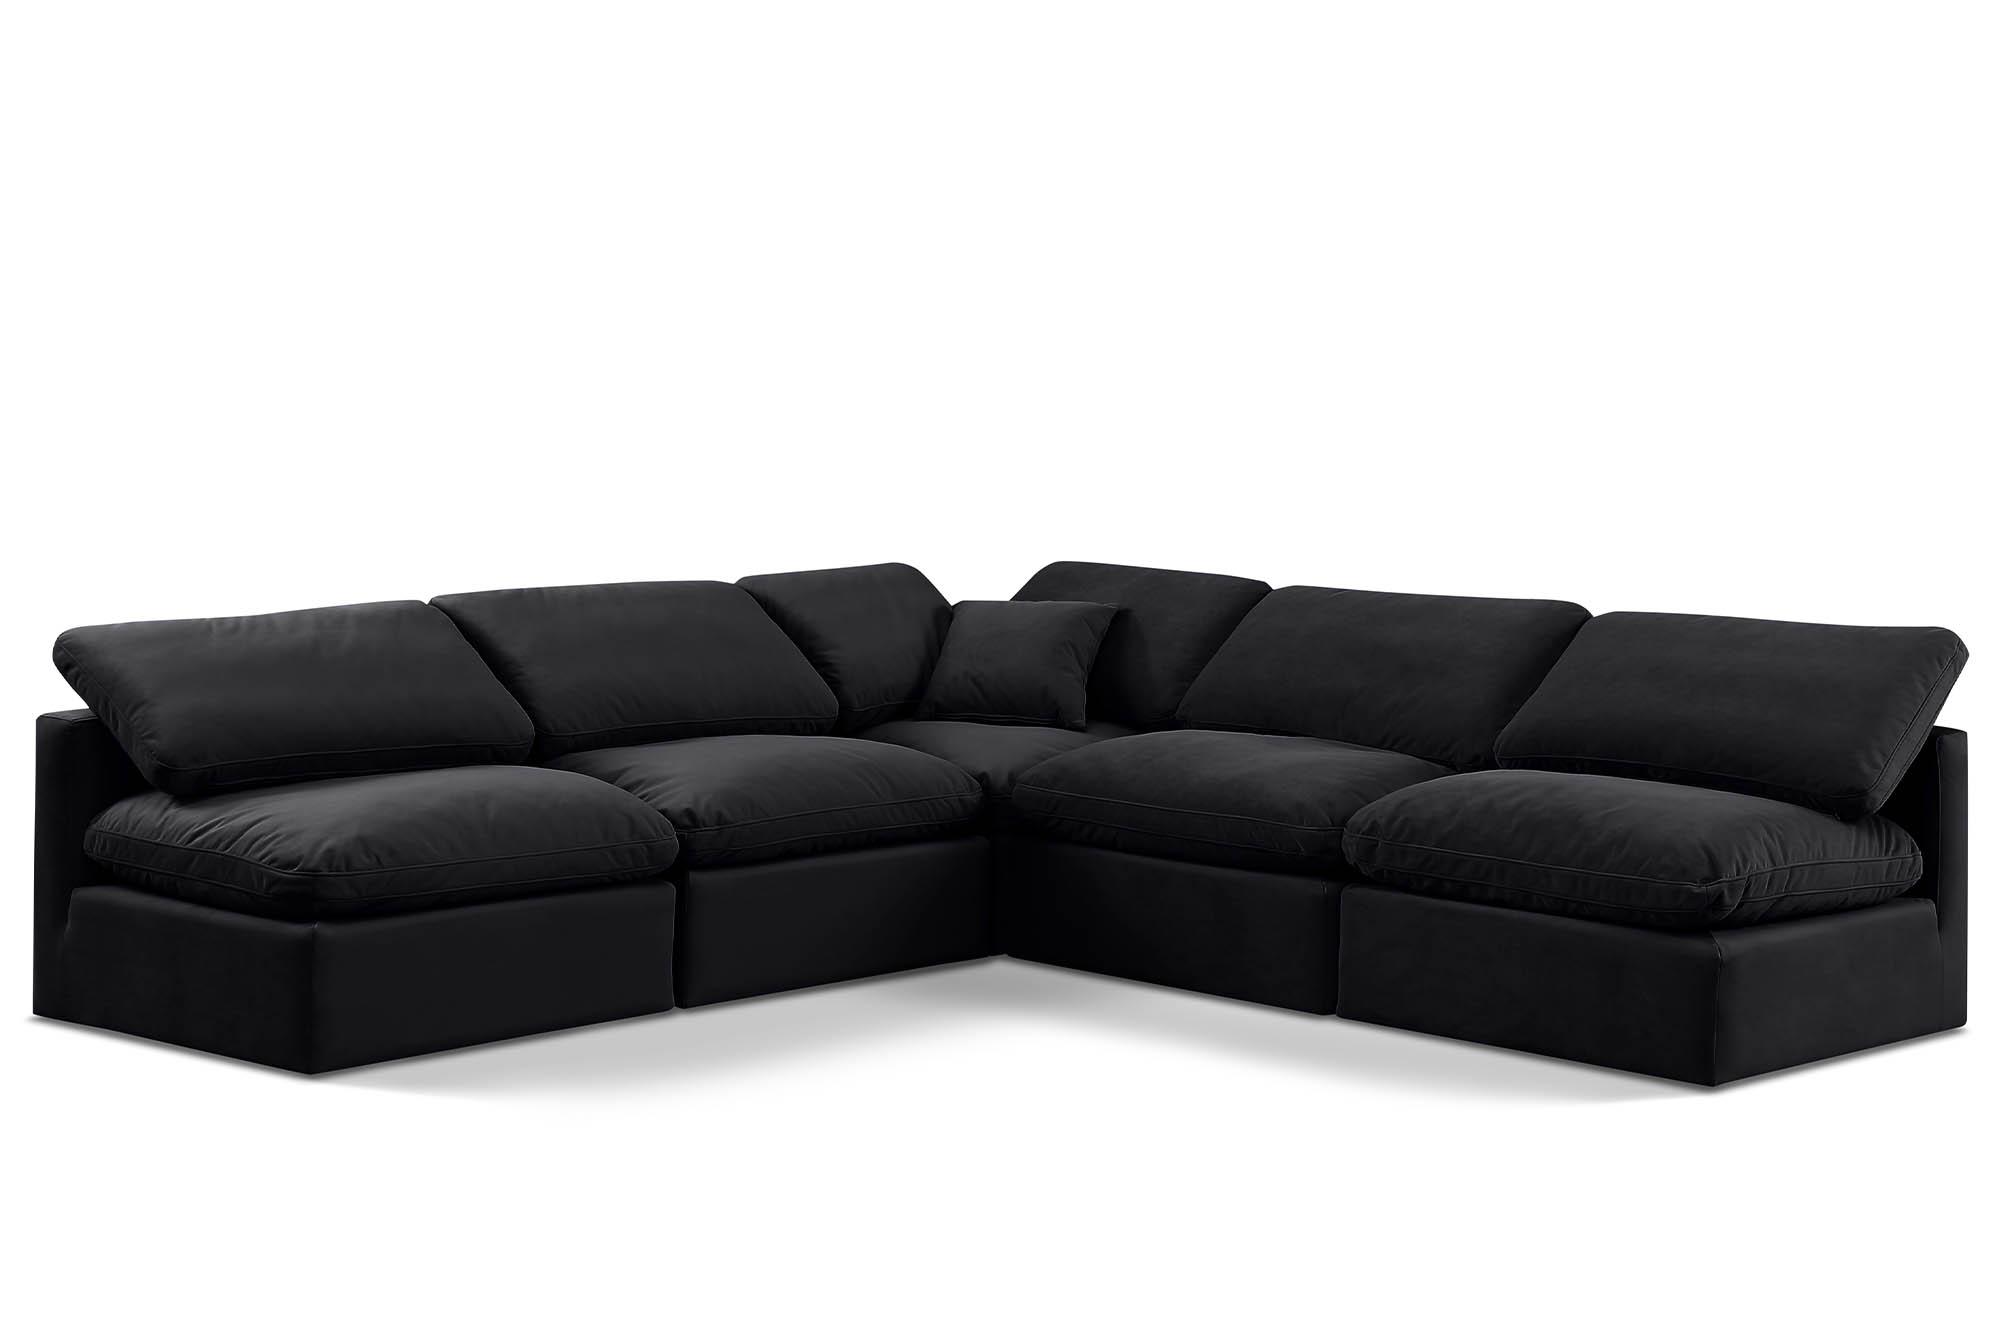 Contemporary, Modern Modular Sectional Sofa INDULGE 147Black-Sec5B 147Black-Sec5B in Black Velvet